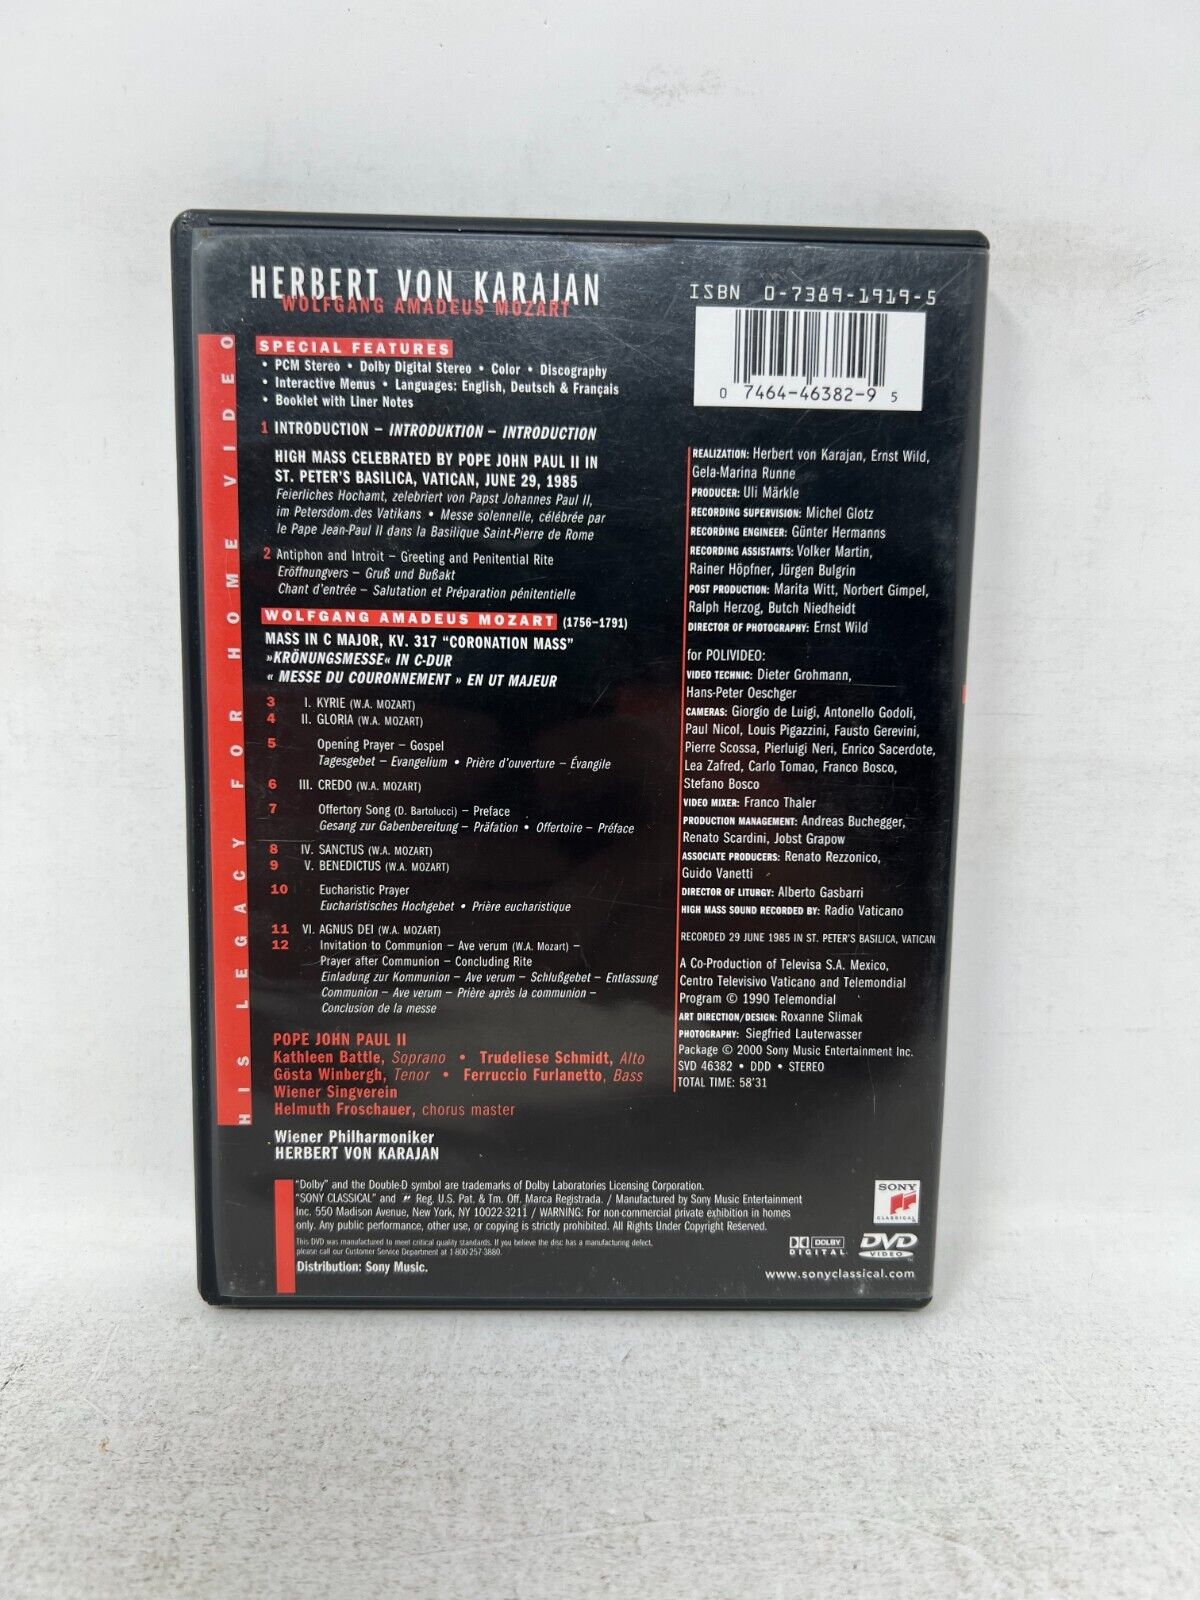 Mozart Coronation Mass Herbert Karajan (DVD, 2000) Music Concert Good Condition!